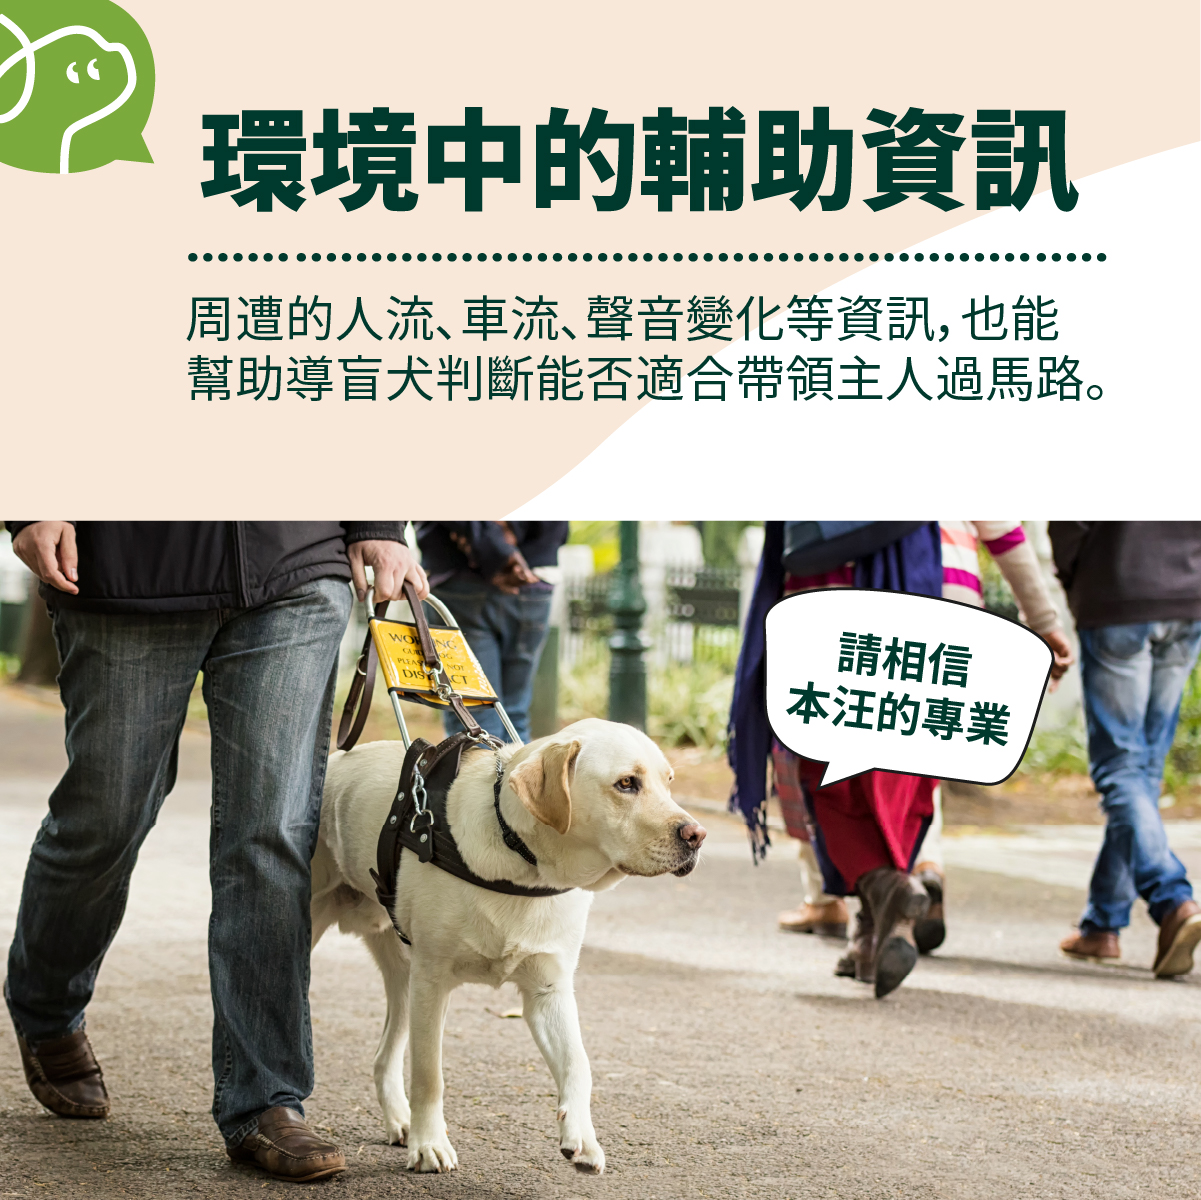 周遭的人流、車流、聲音變化等資訊，也能
幫助導盲犬判斷能否適合帶領主人過馬路。